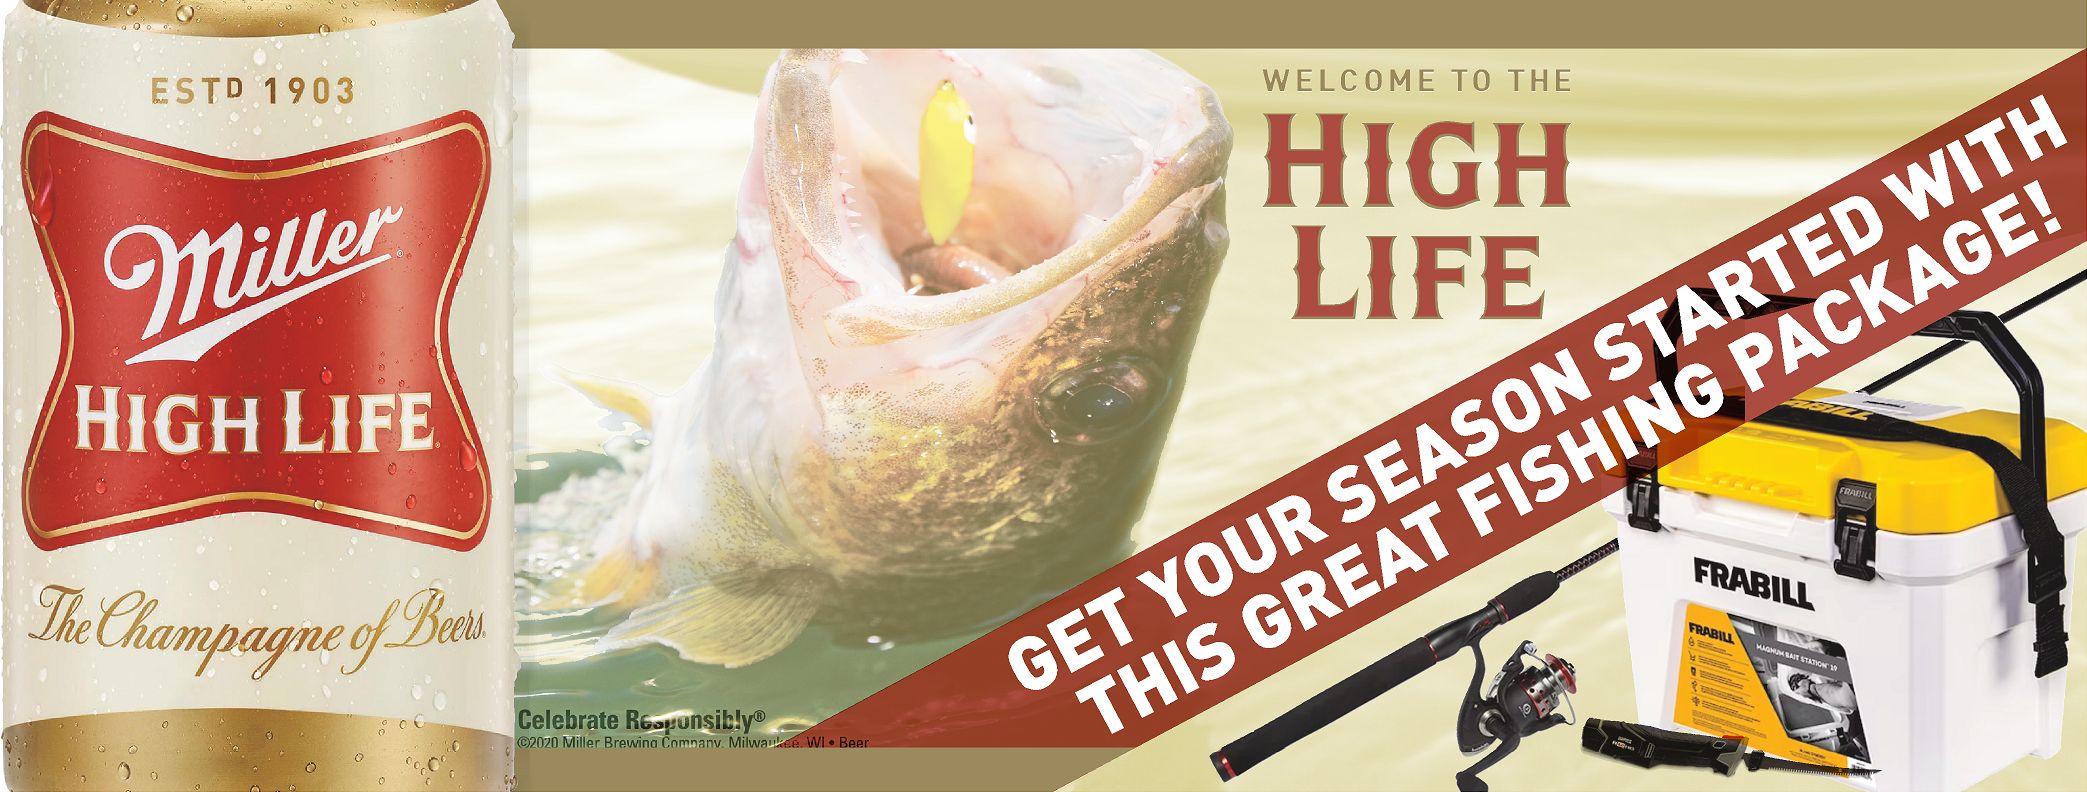 high-life-fishing-package-giveaway-4-25-6-31-dahlheimerbeverage